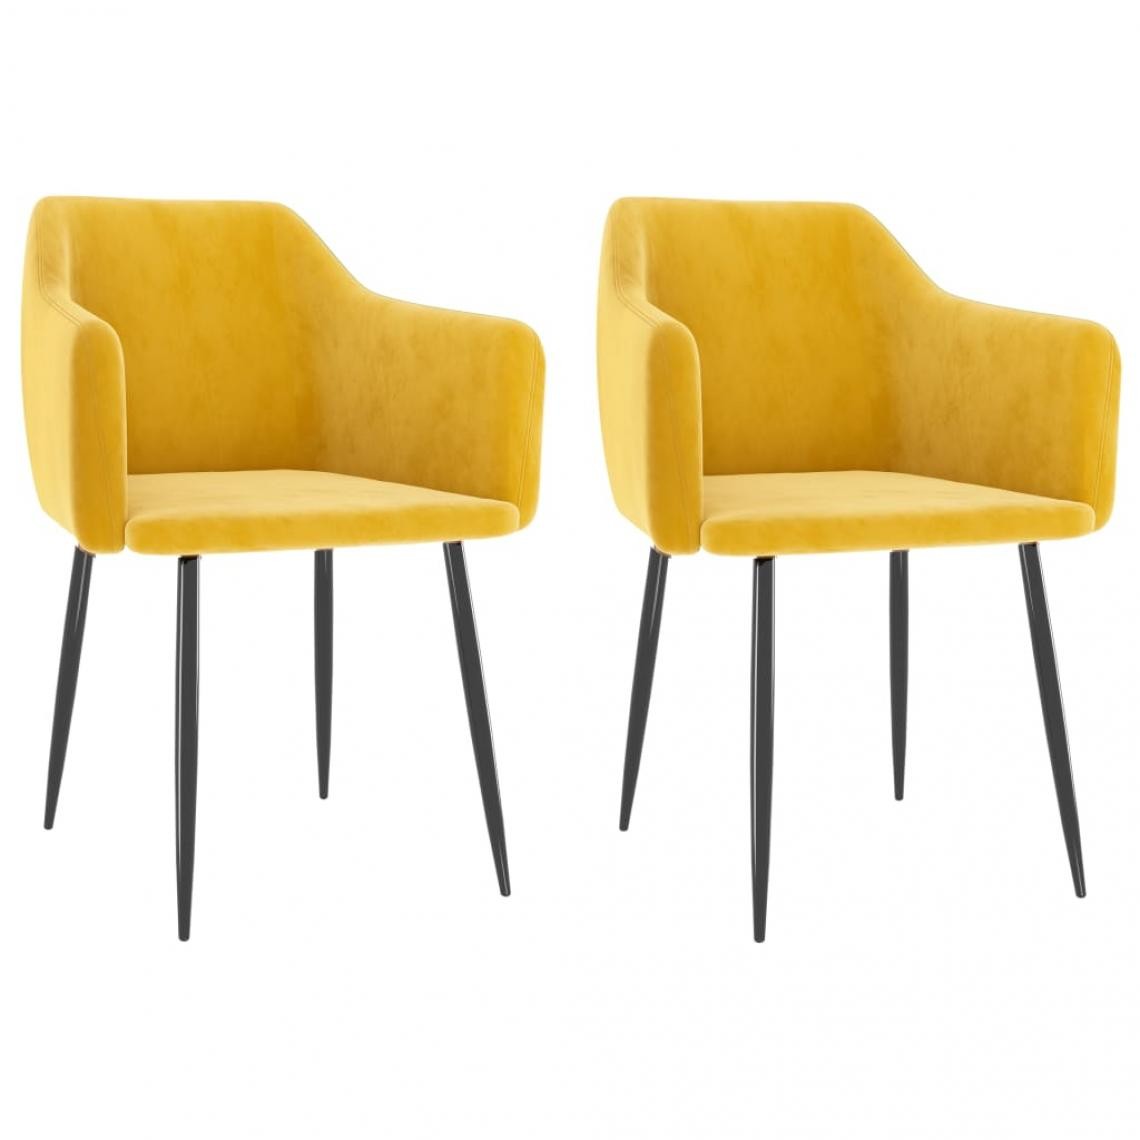 Decoshop26 - Lot de 2 chaises de salle à manger cuisine design moderne velours jaune moutarde CDS020631 - Chaises